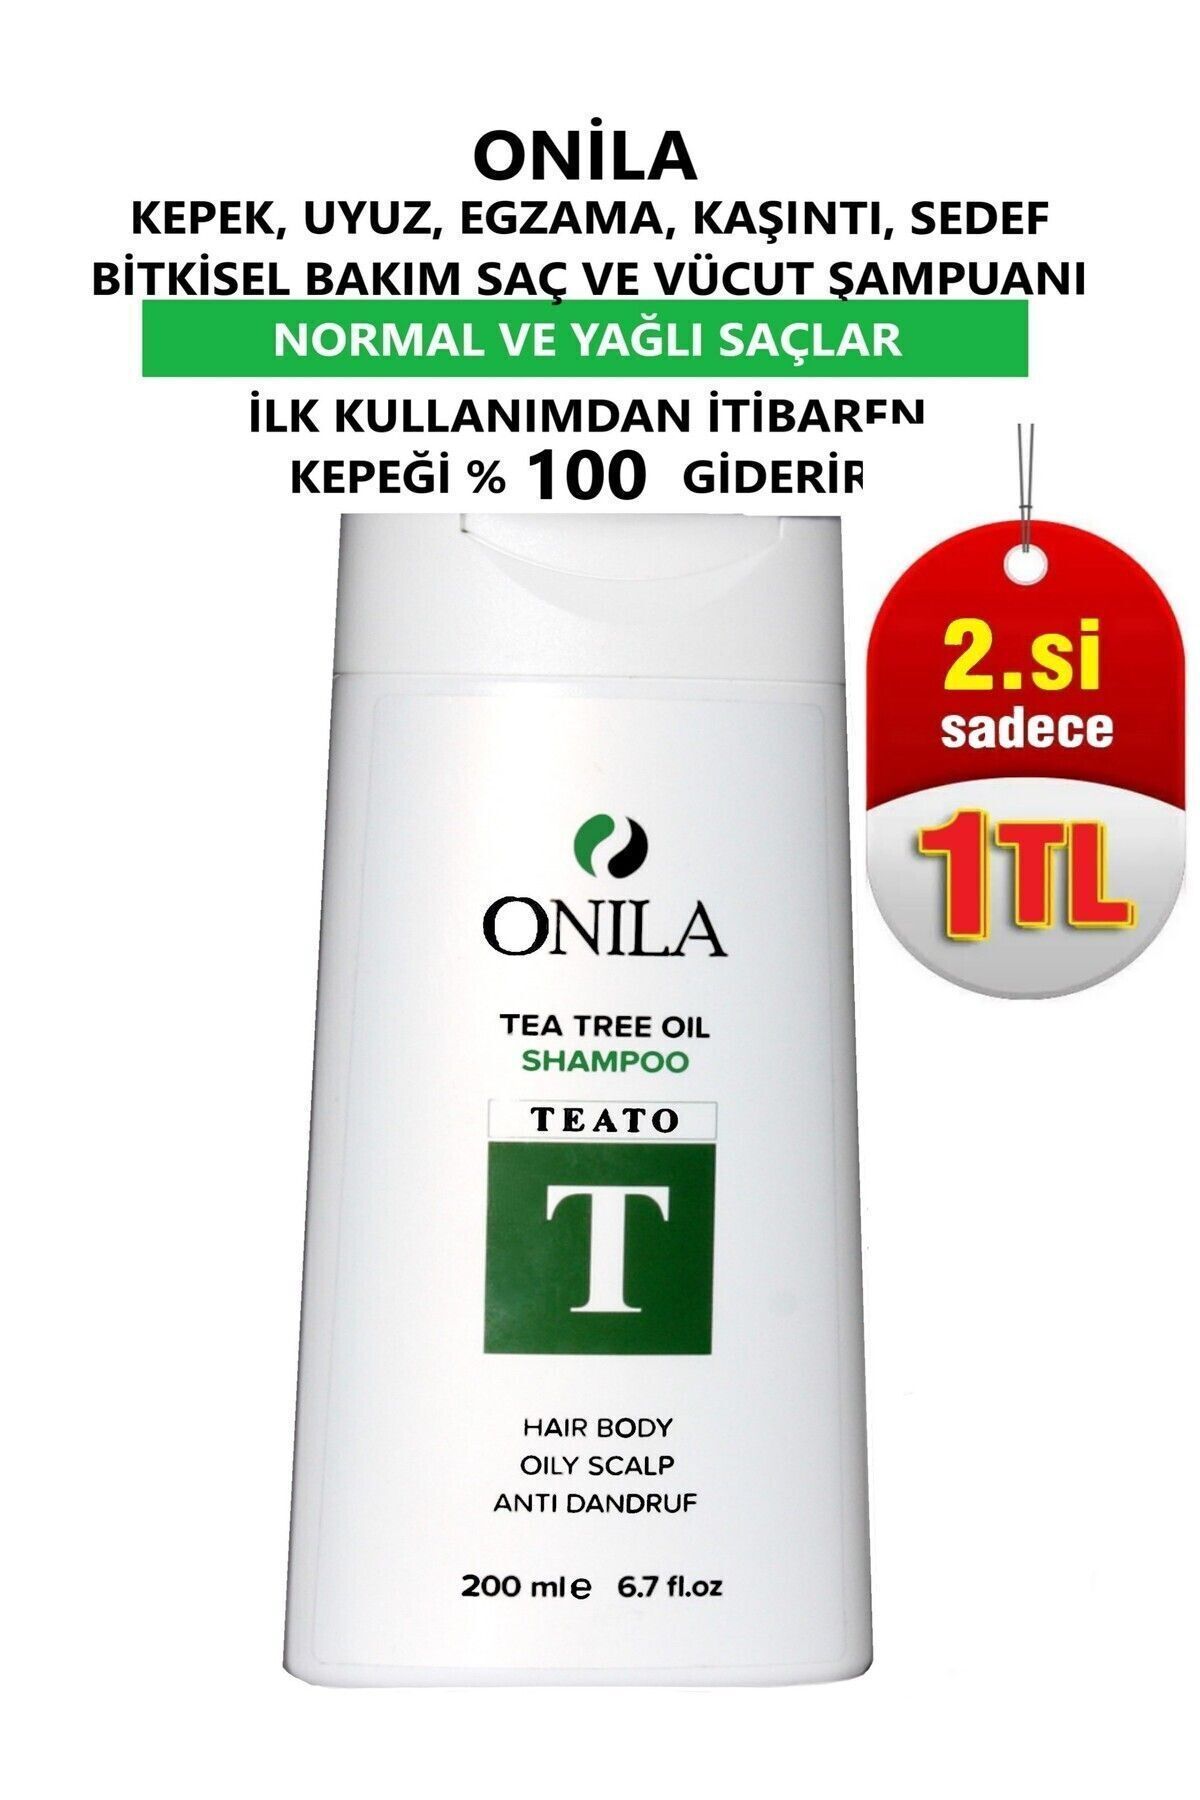 Onila Kepeğe Karşı Etkili Bitkisel Bakim Şampuanı 200 ml (ÇAY AĞACI YAĞI /TEA TREE OİL)